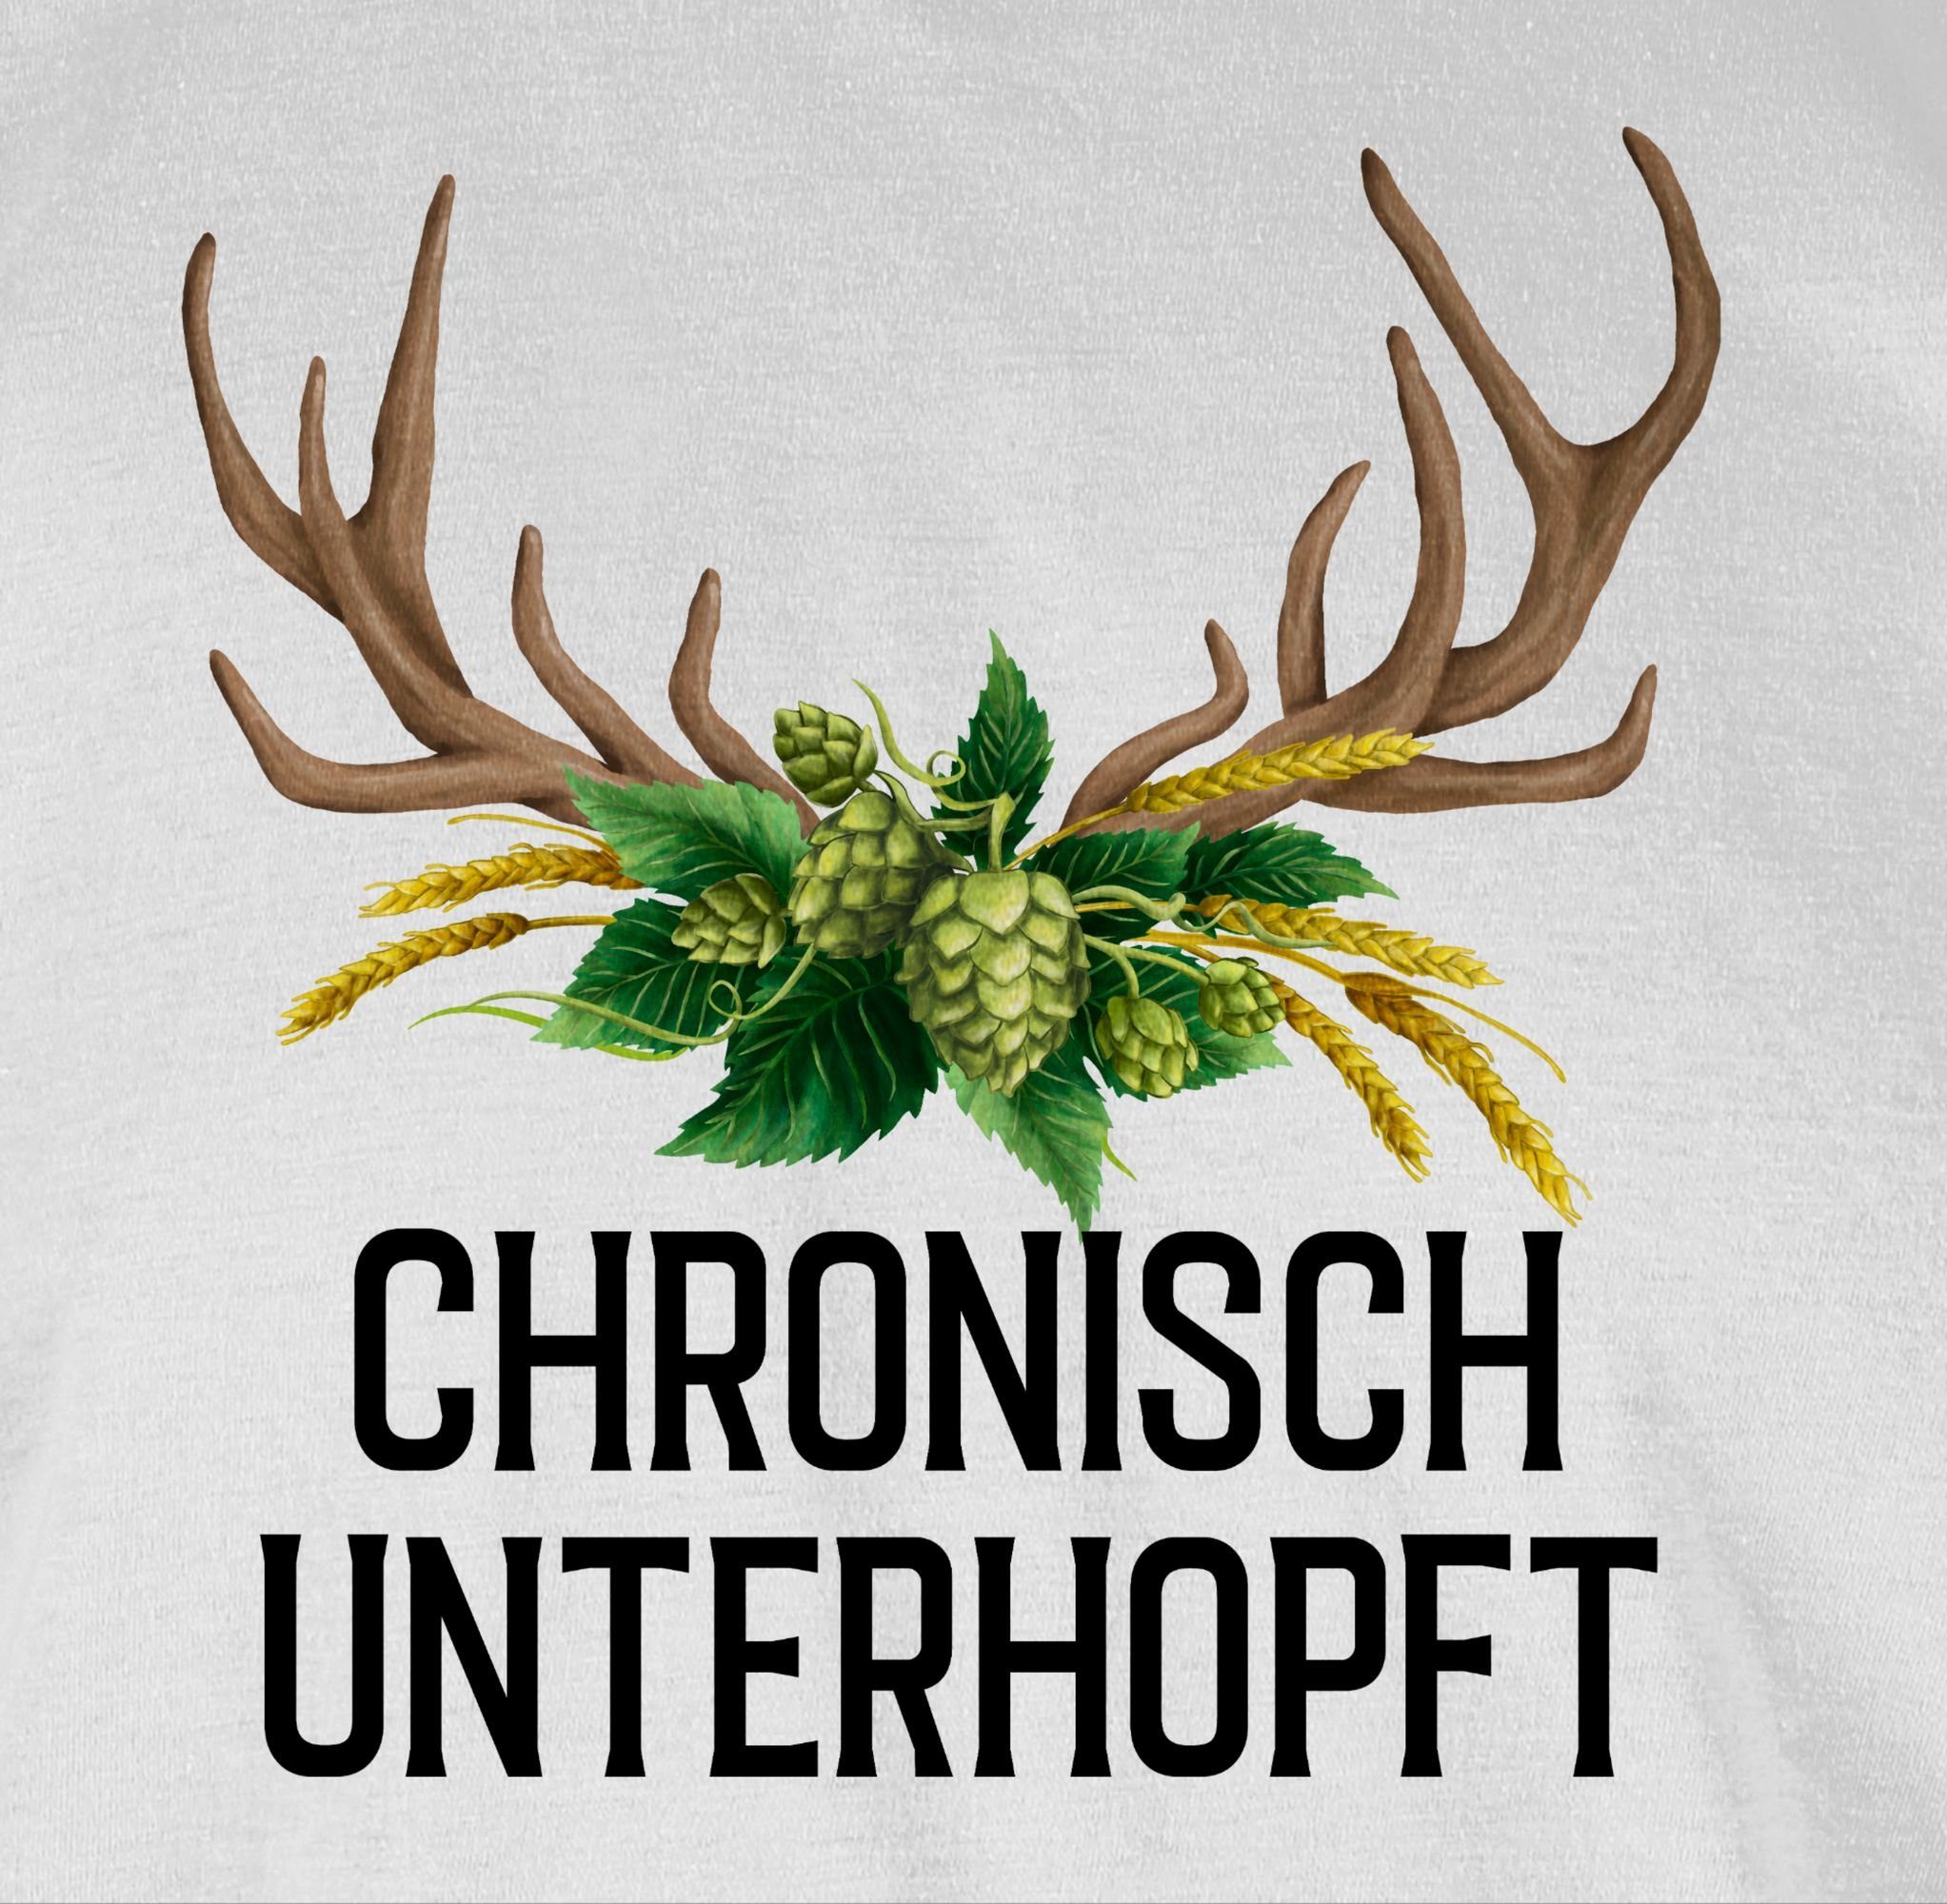 Hirschgeweih und T-Shirt unterhopft Herren Hopfen 01 Mode - Chronisch Oktoberfest Weizen für Weiß Shirtracer